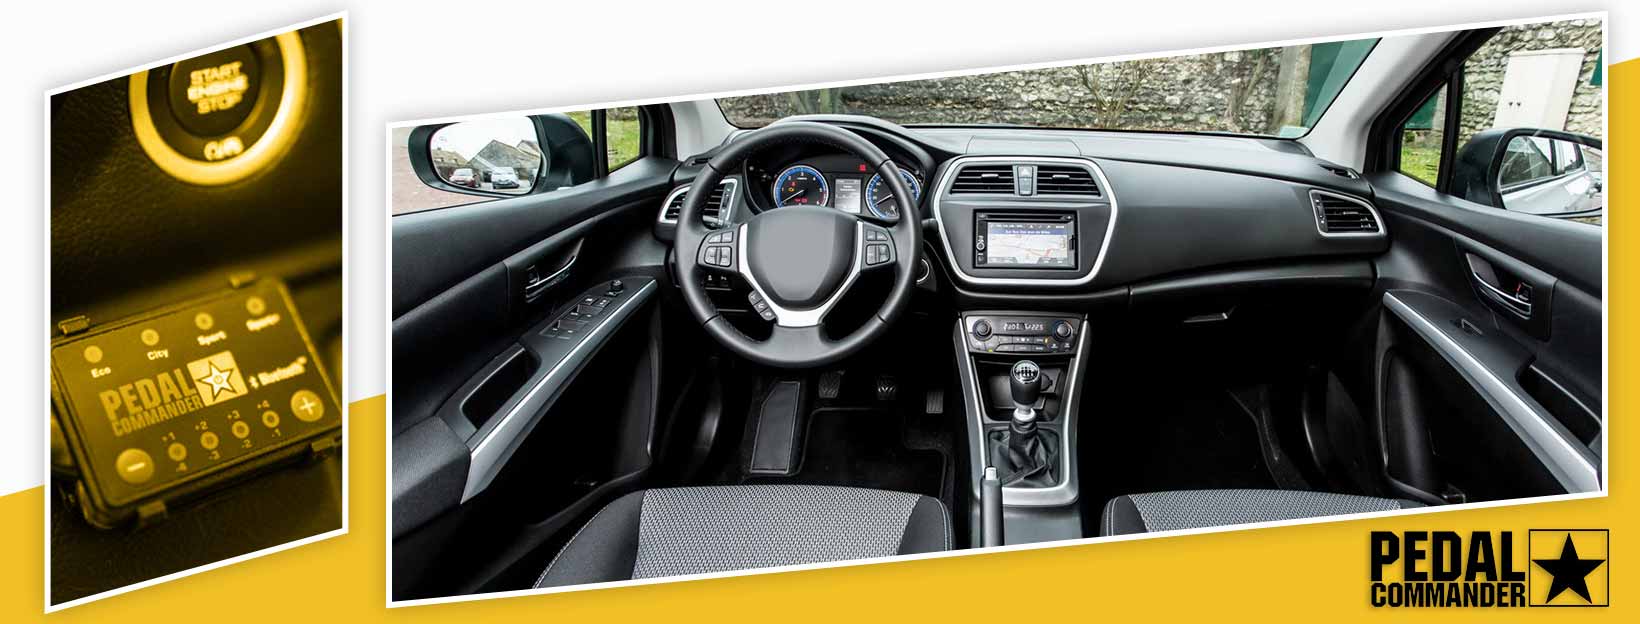 Pedal Commander for Suzuki SX4 - interior